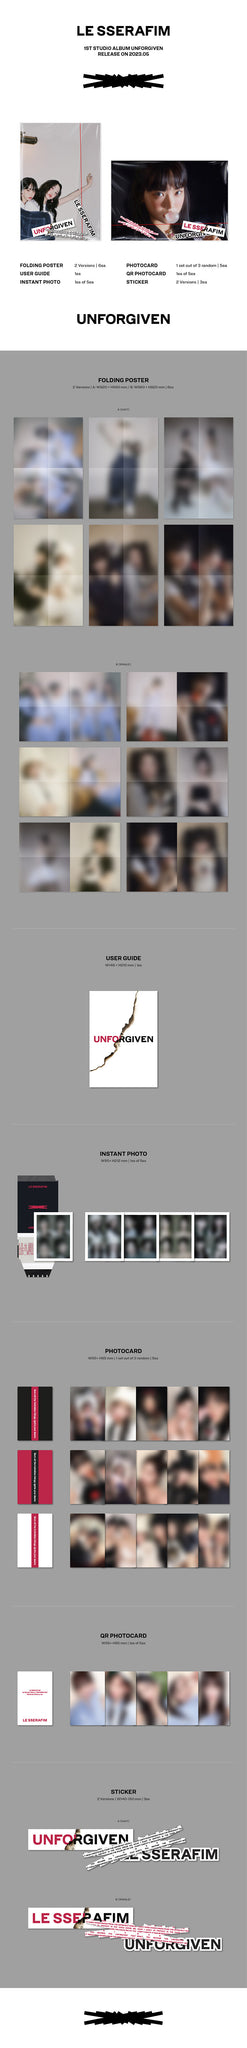 LE SSERAFIM - UNFORGIVEN (Weverse Albums ver.)